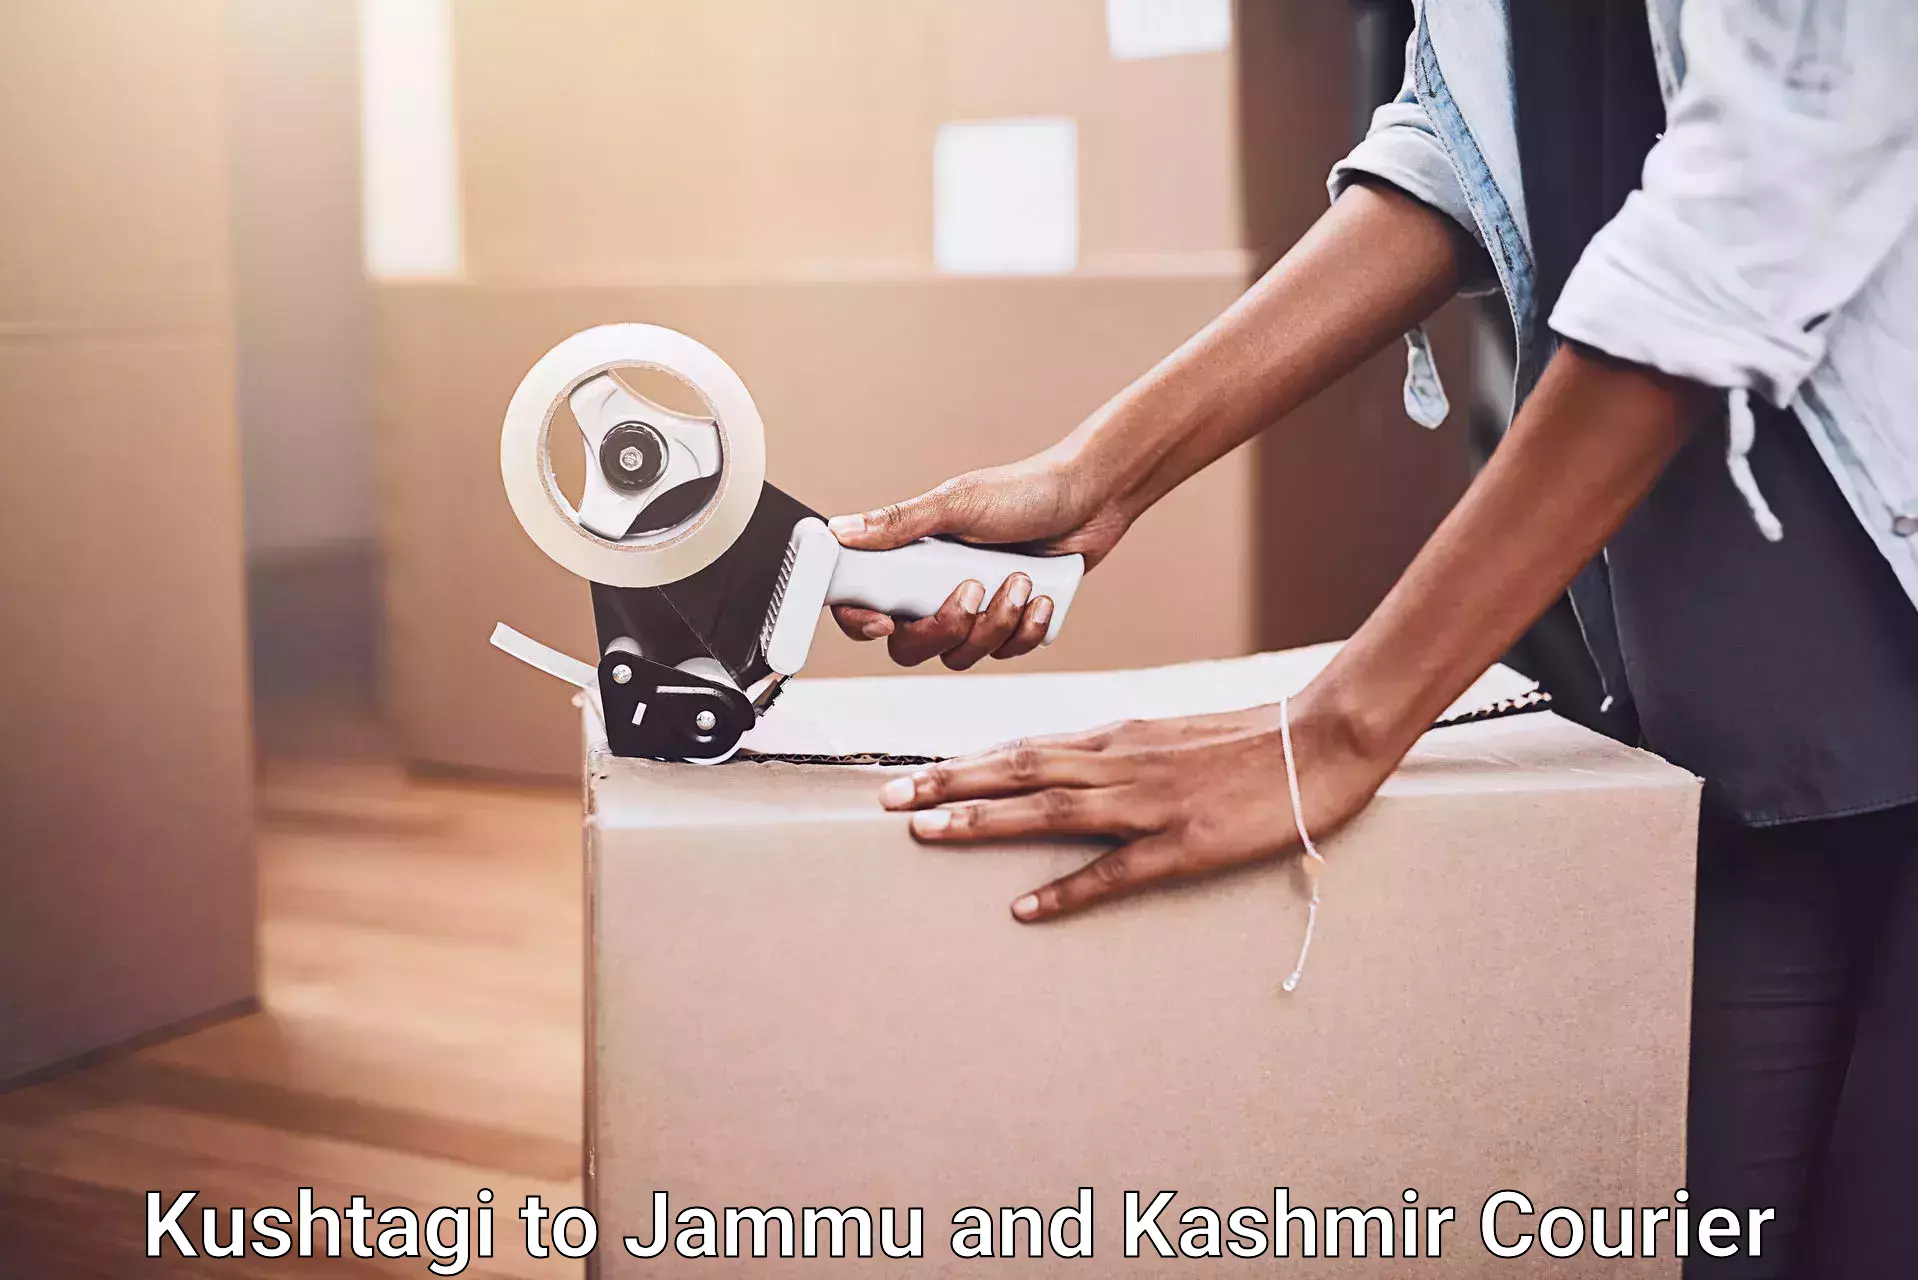 Professional packing services Kushtagi to Jammu